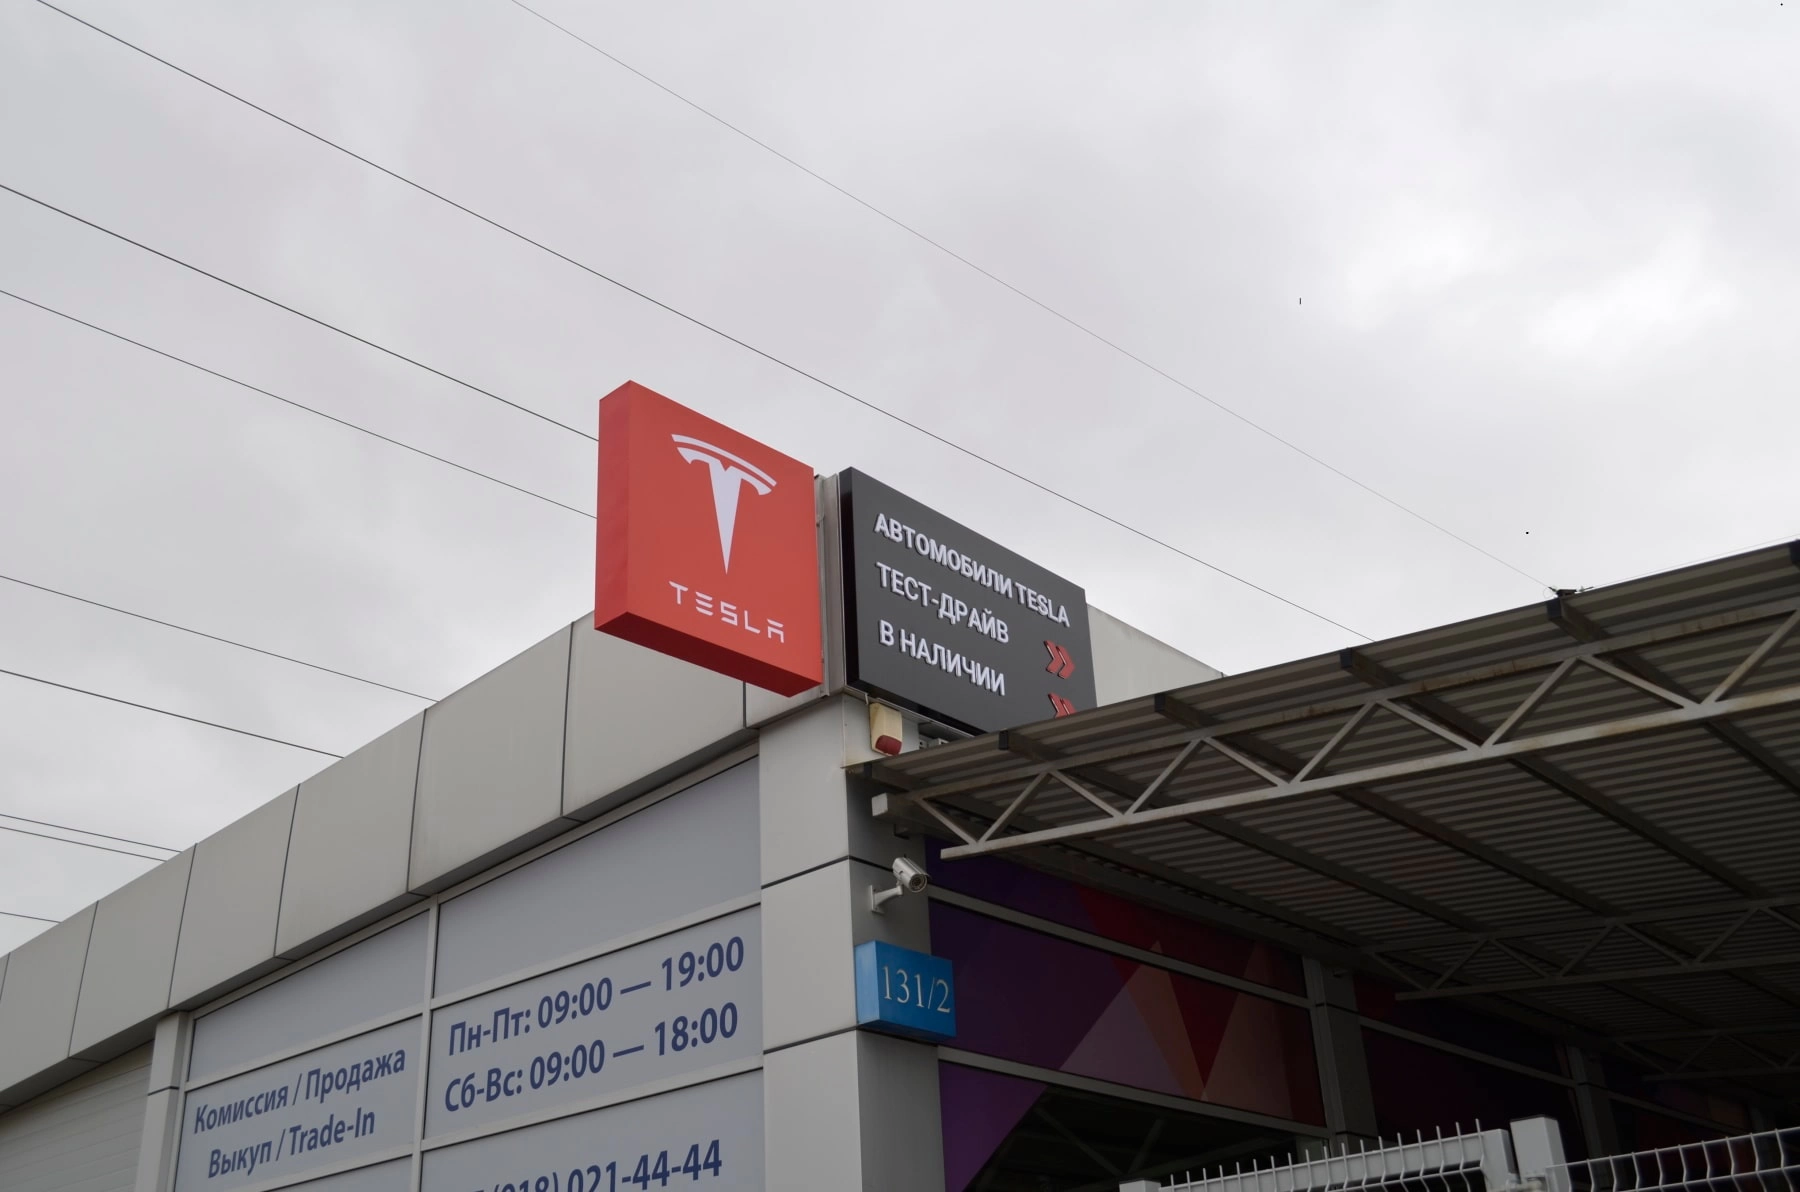 Световой короб автосалона по продаже автомобилей Tesla. Изготовление рекламных материалов в типографии Quickprint г. Краснодар